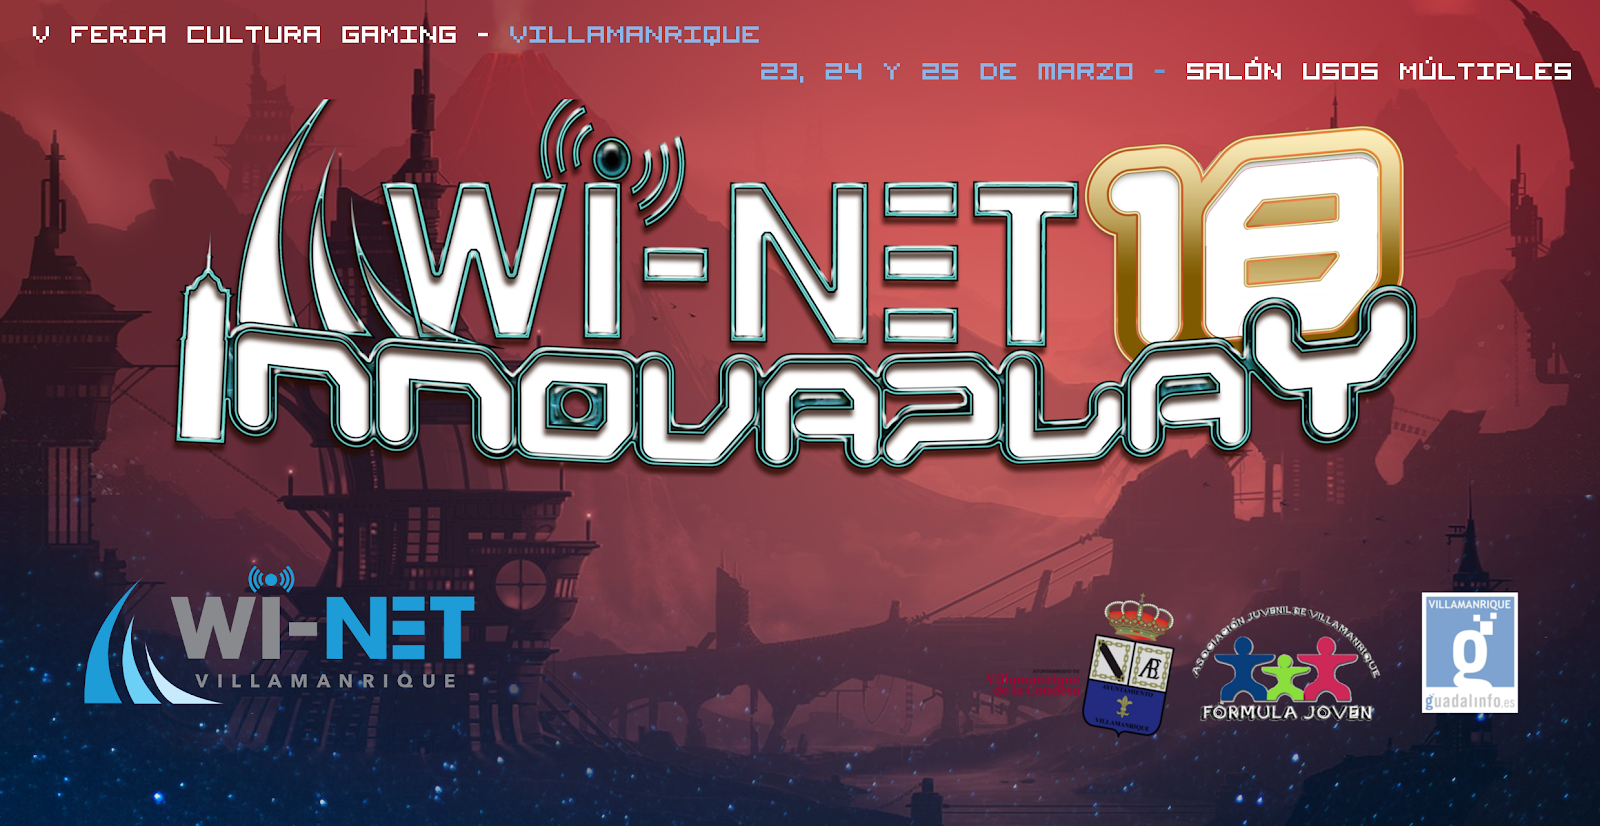 Wi-Net Innovaplay18